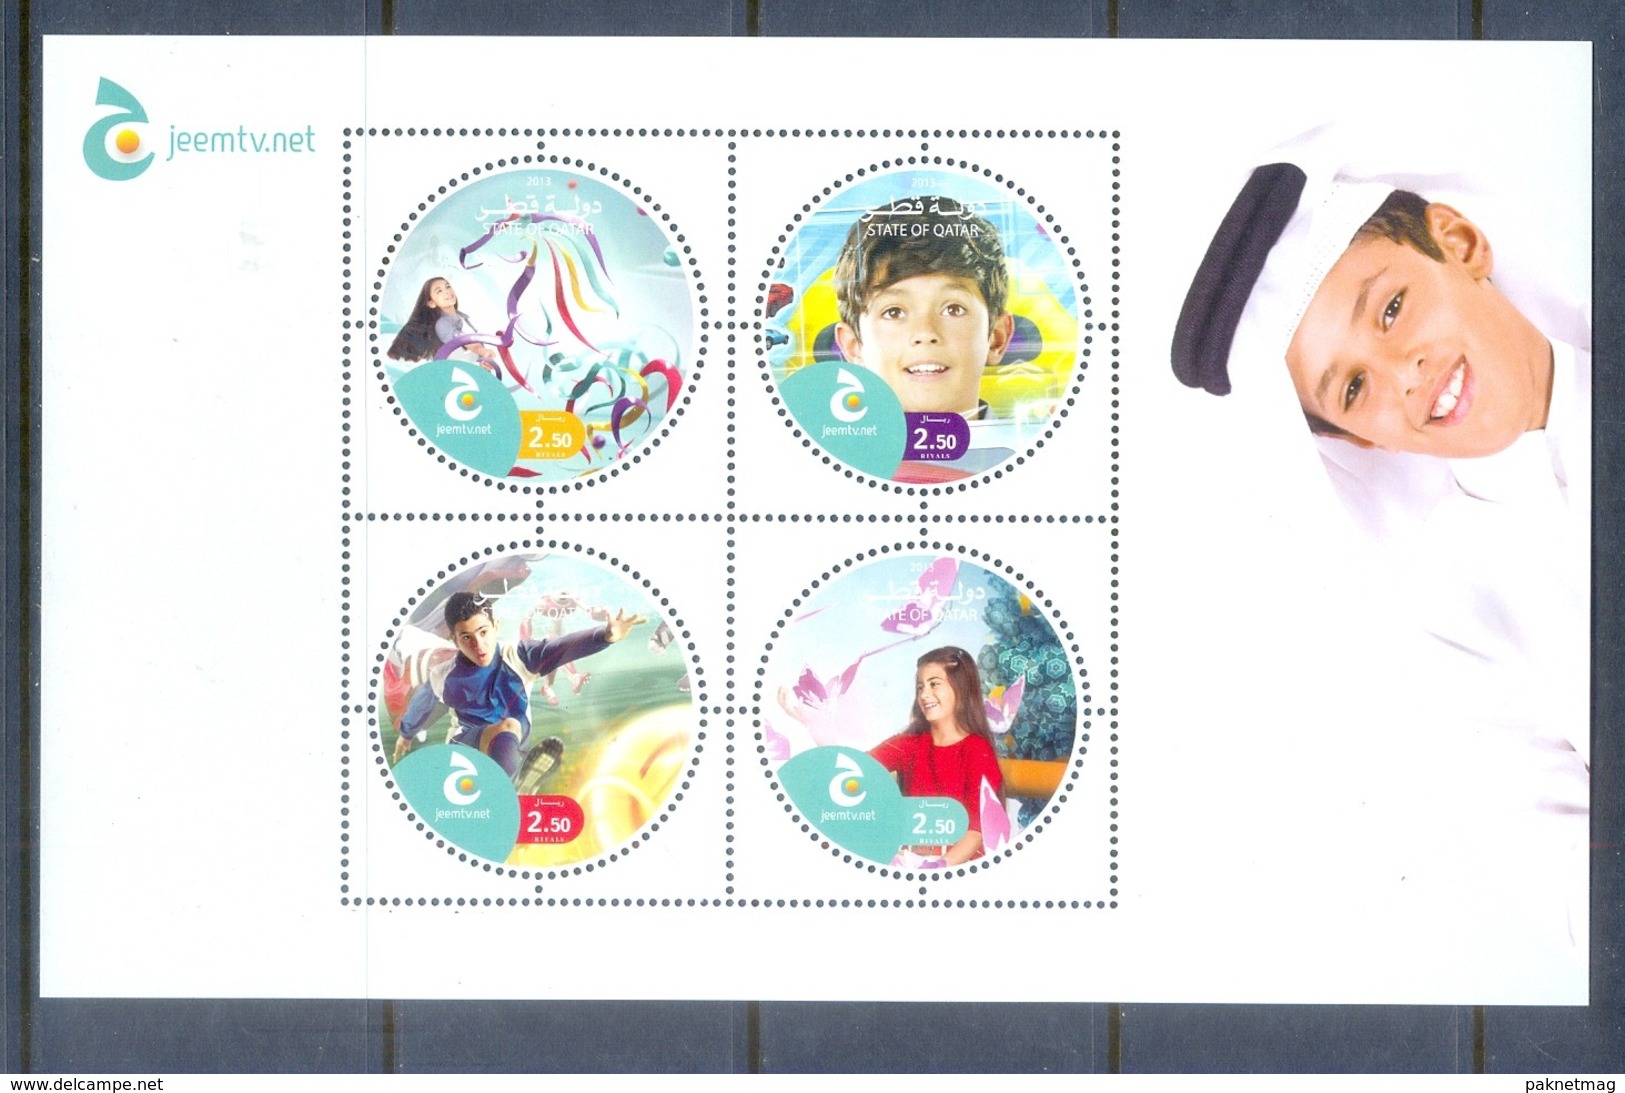 H6- Qatar 2013 Jeem Tv For Children, 4 Stamps Round Odd Shape. - Qatar